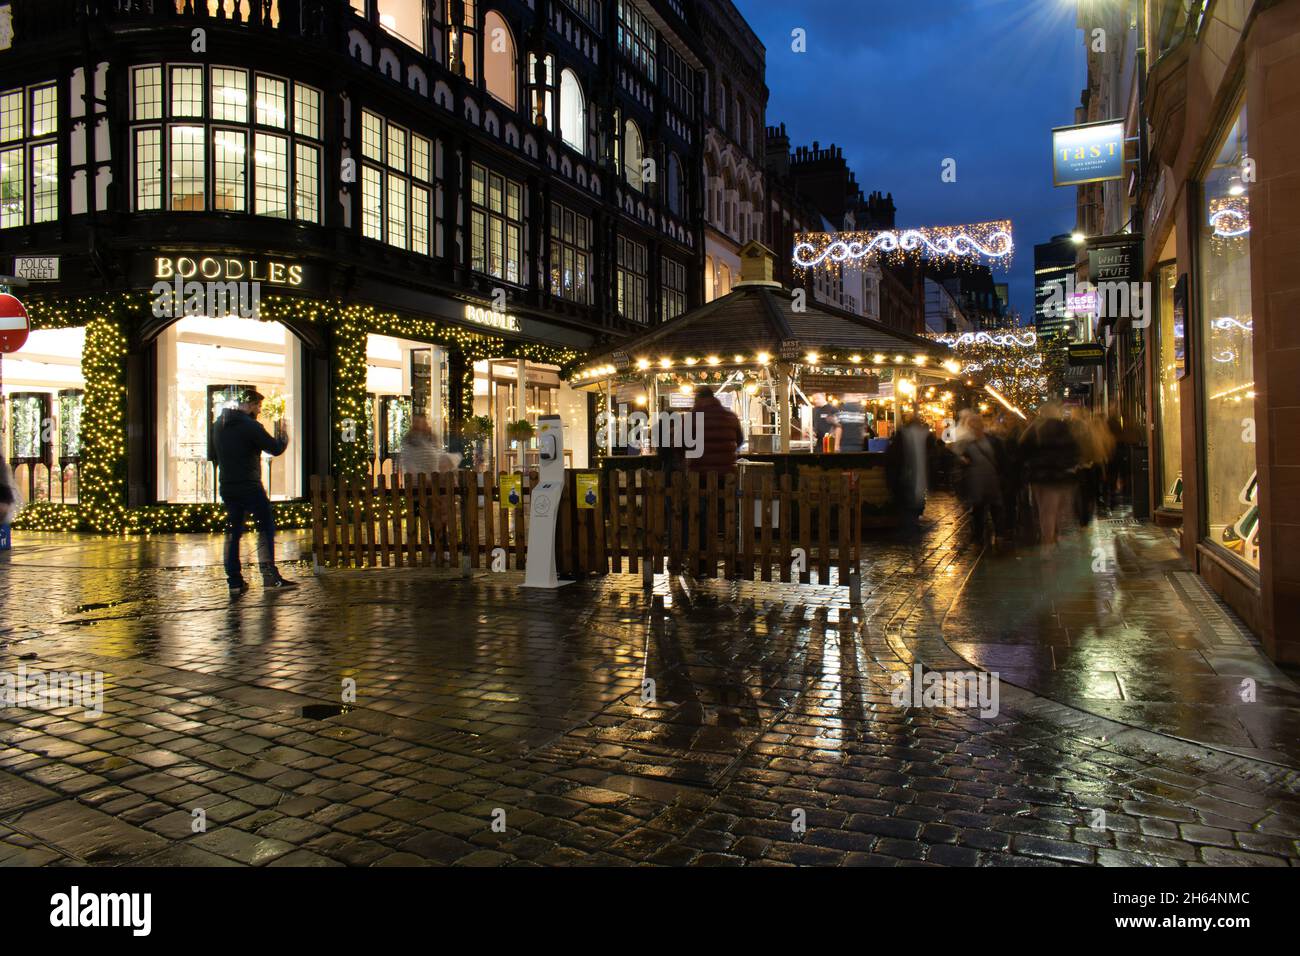 Weihnachtsmarkt in der King Street vor dem Boodles-Laden. Eröffnungsabend. Langzeitbelichtung. Manchester, Großbritannien Stockfoto